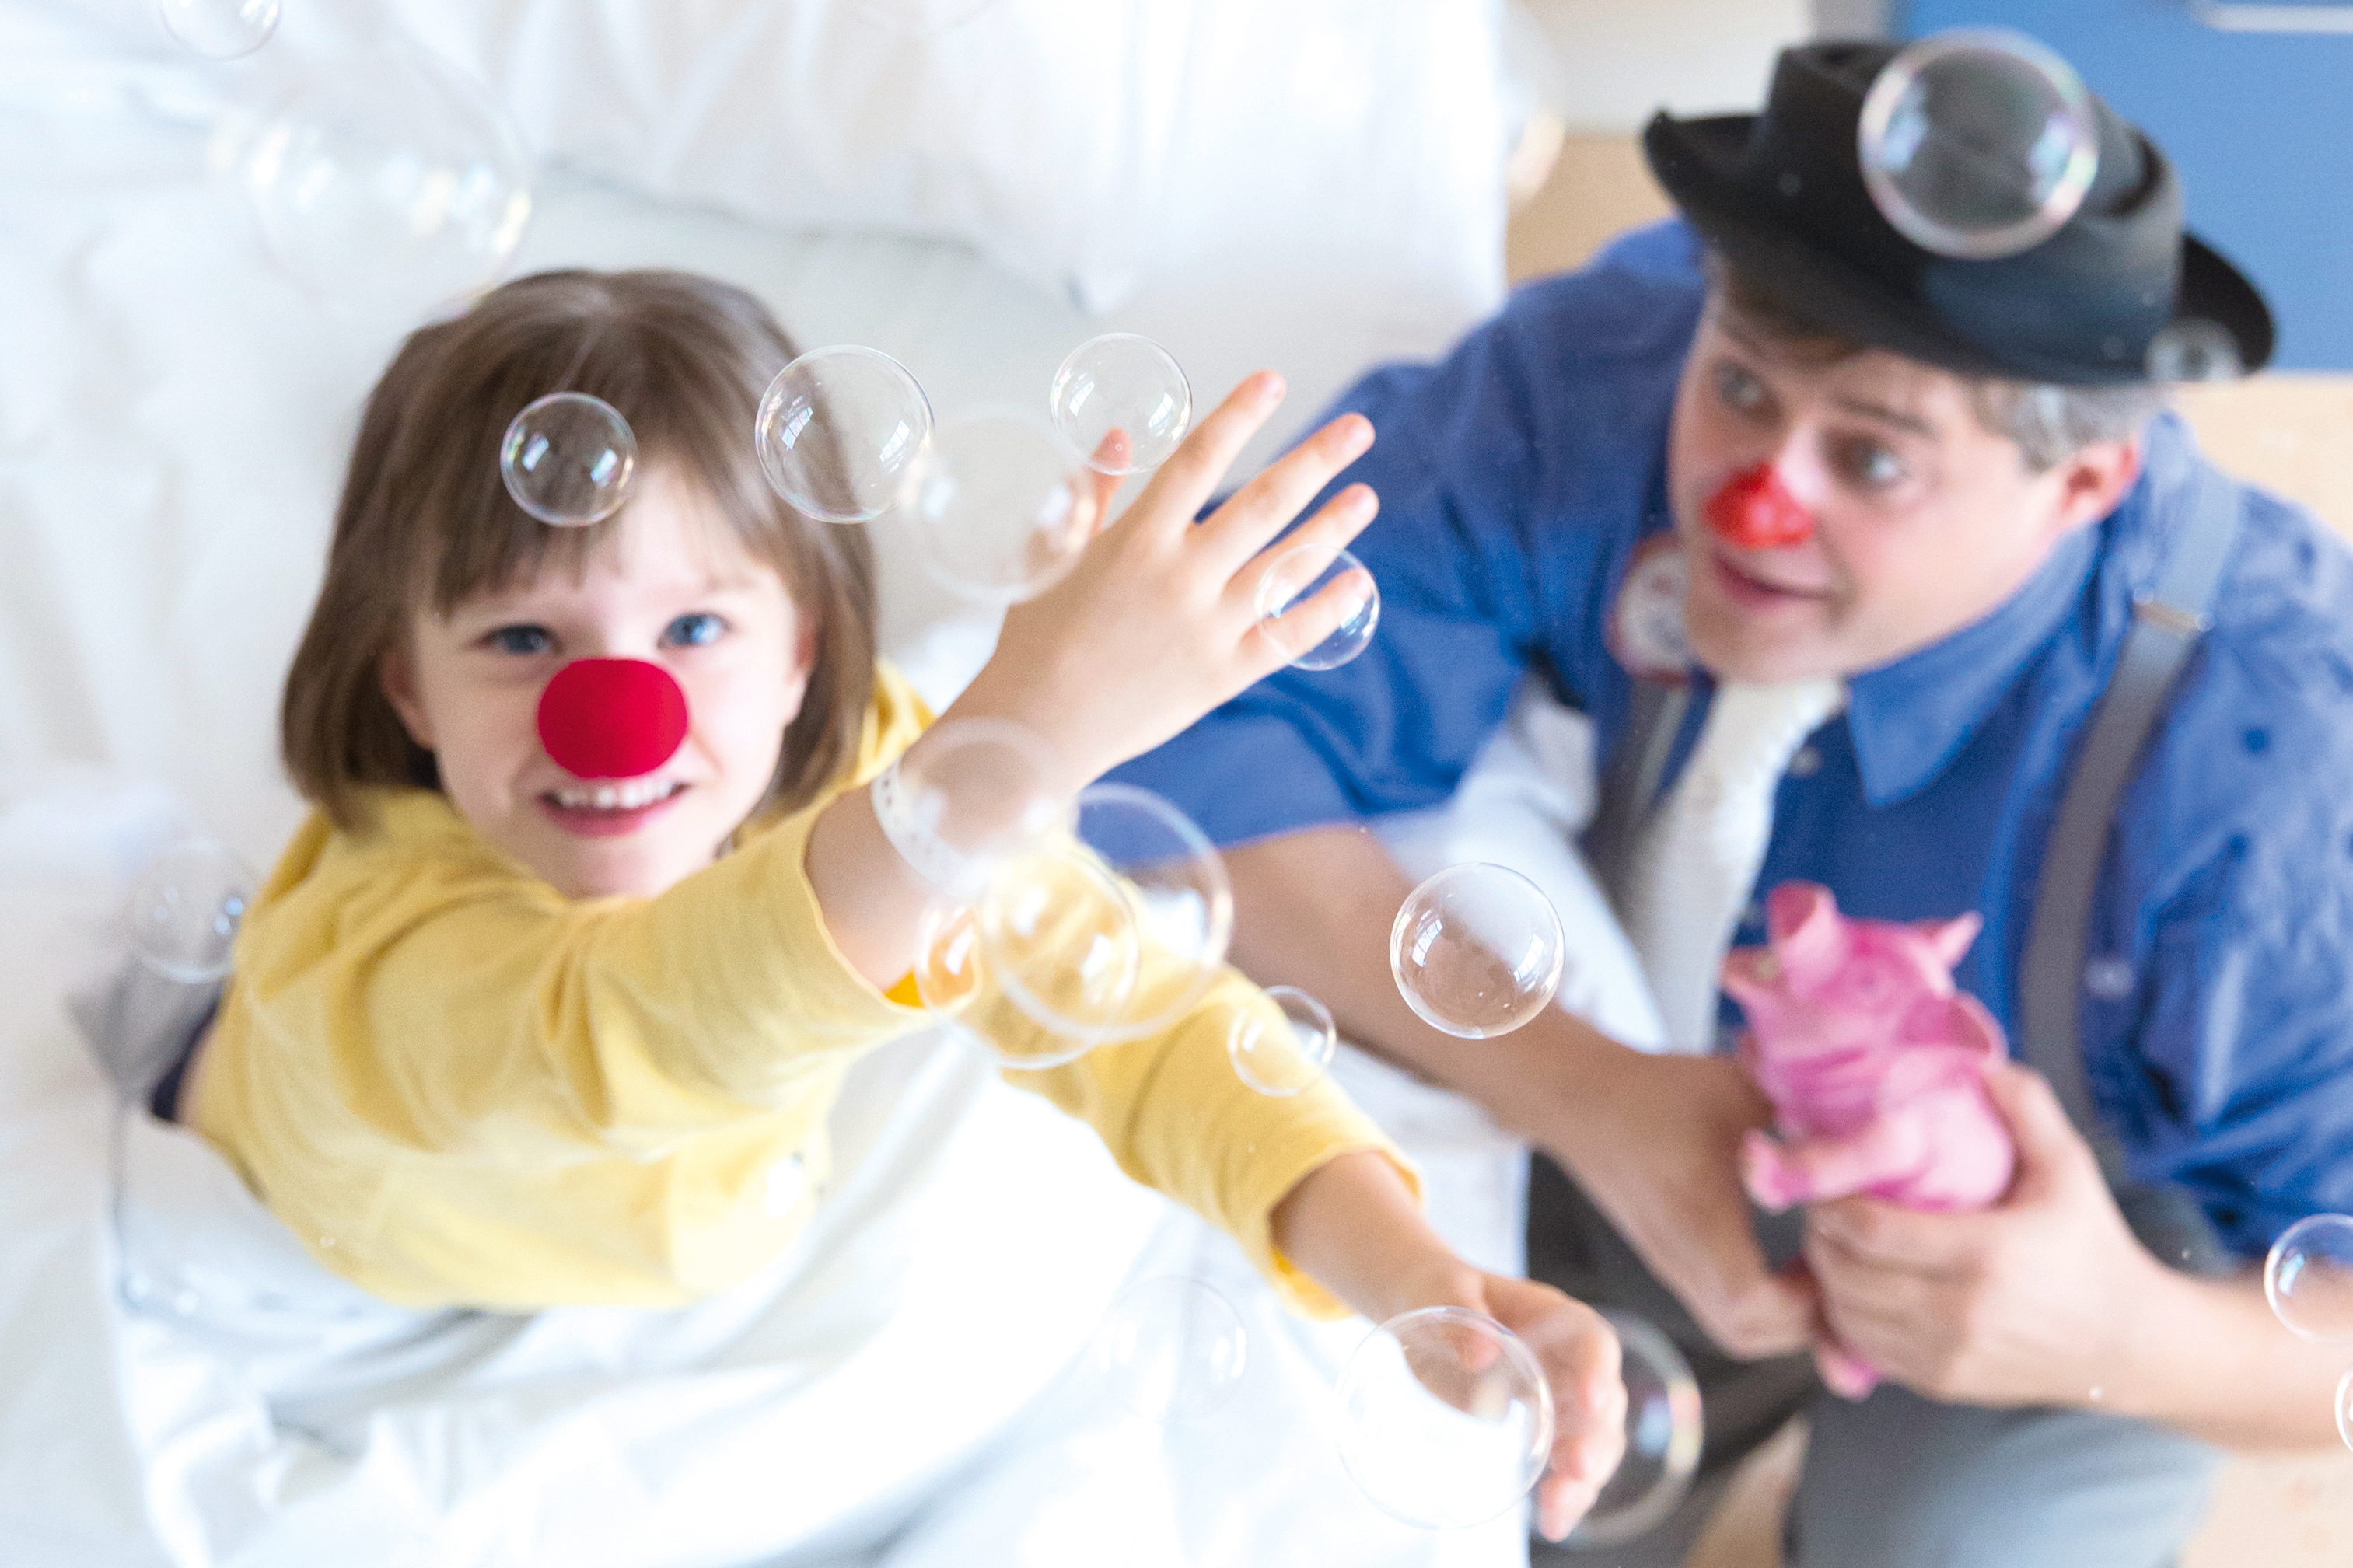 ROTE NASEN Clown bringt krankes Kind zum Lachen